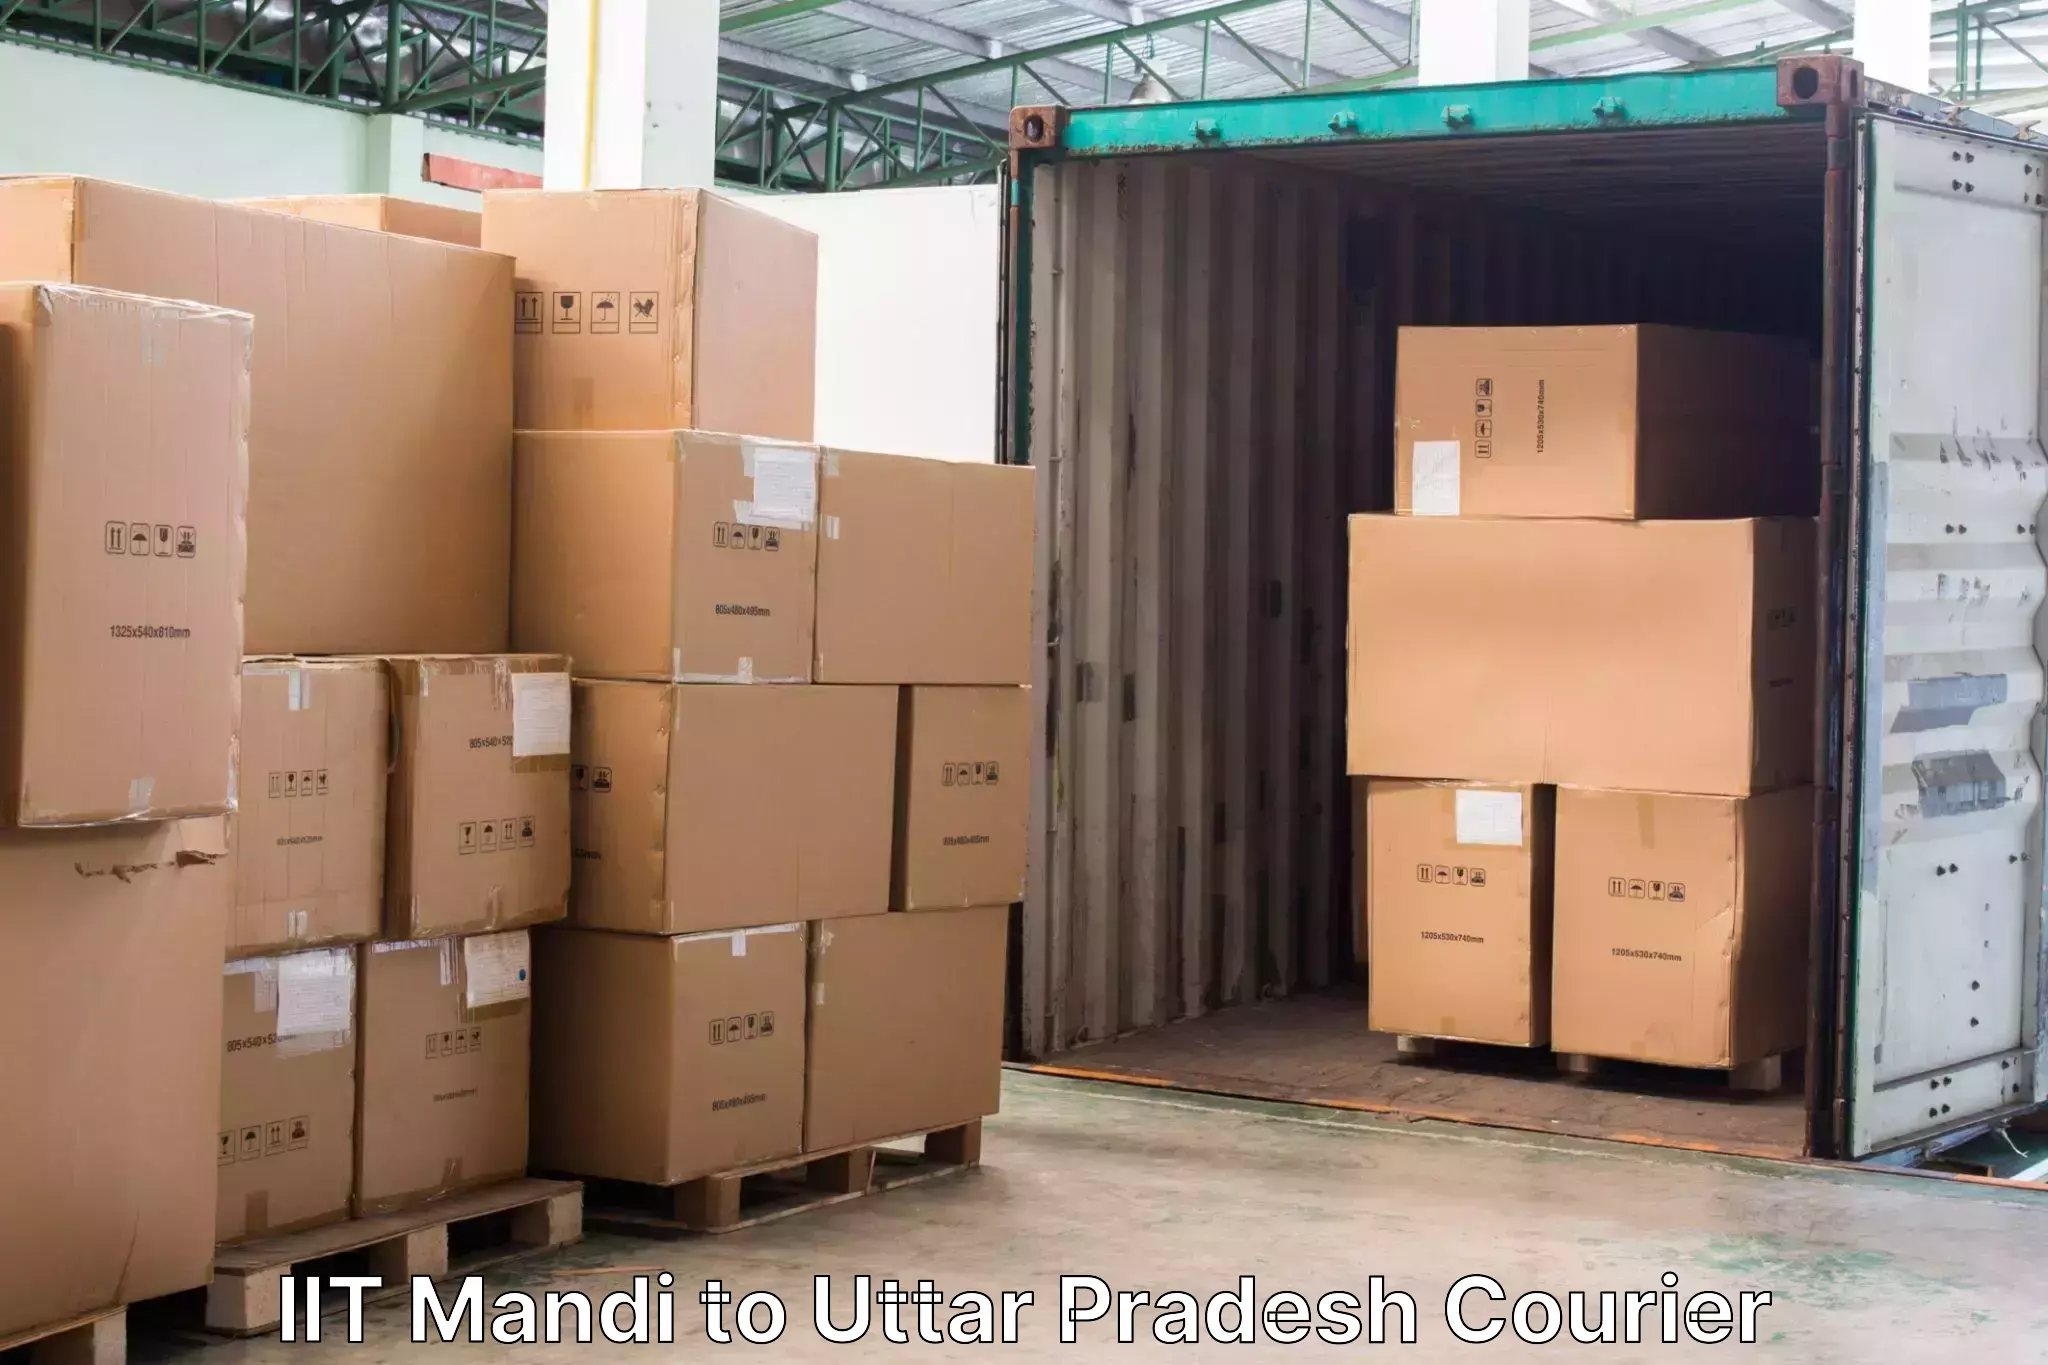 Light baggage courier IIT Mandi to Sahatwar